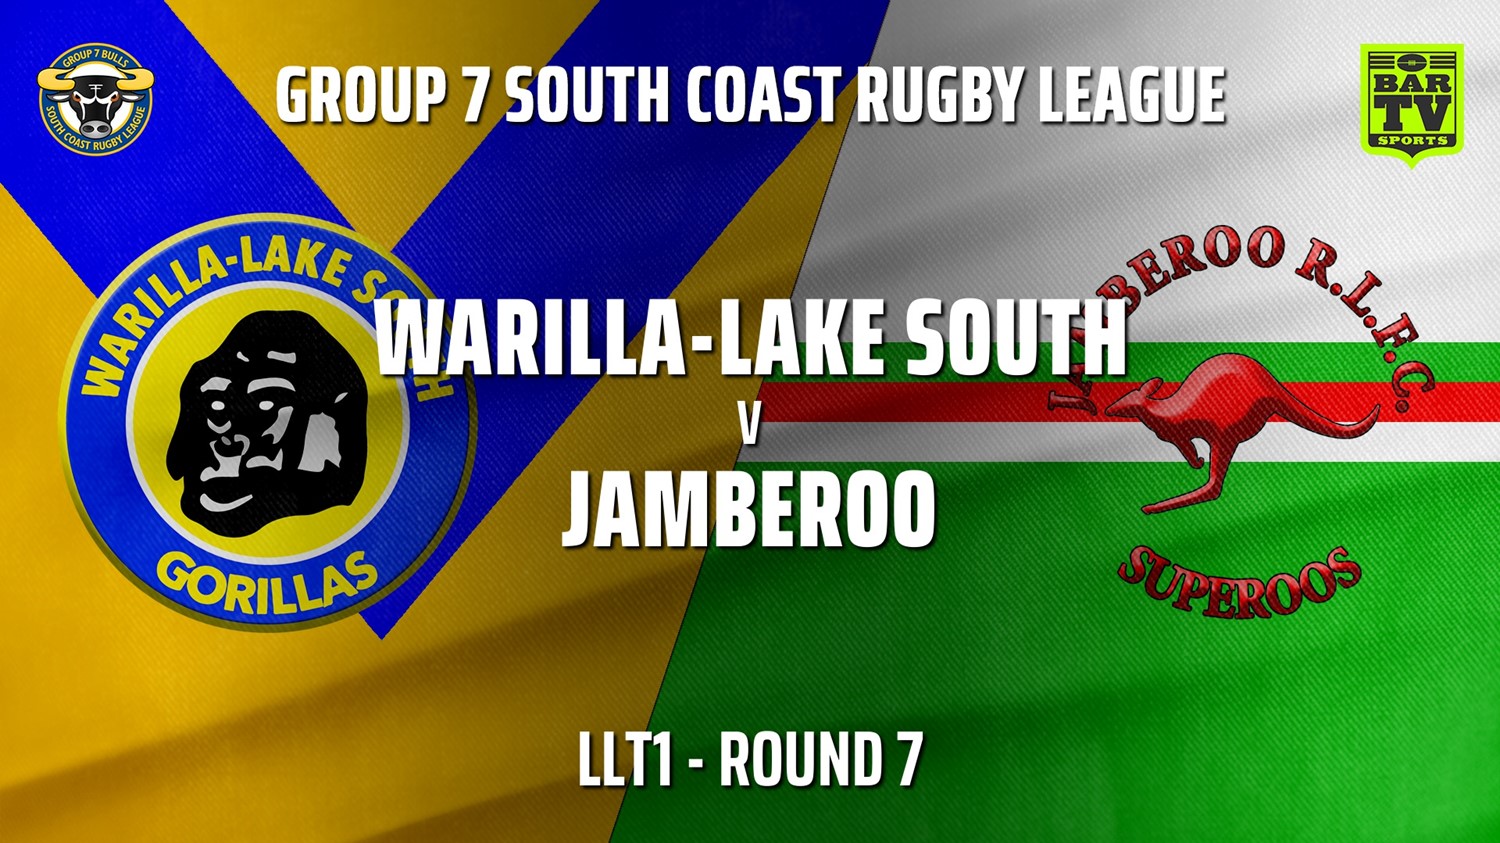 210530-Group 7 RL Round 7 - LLT1 - Warilla-Lake South v Jamberoo Slate Image